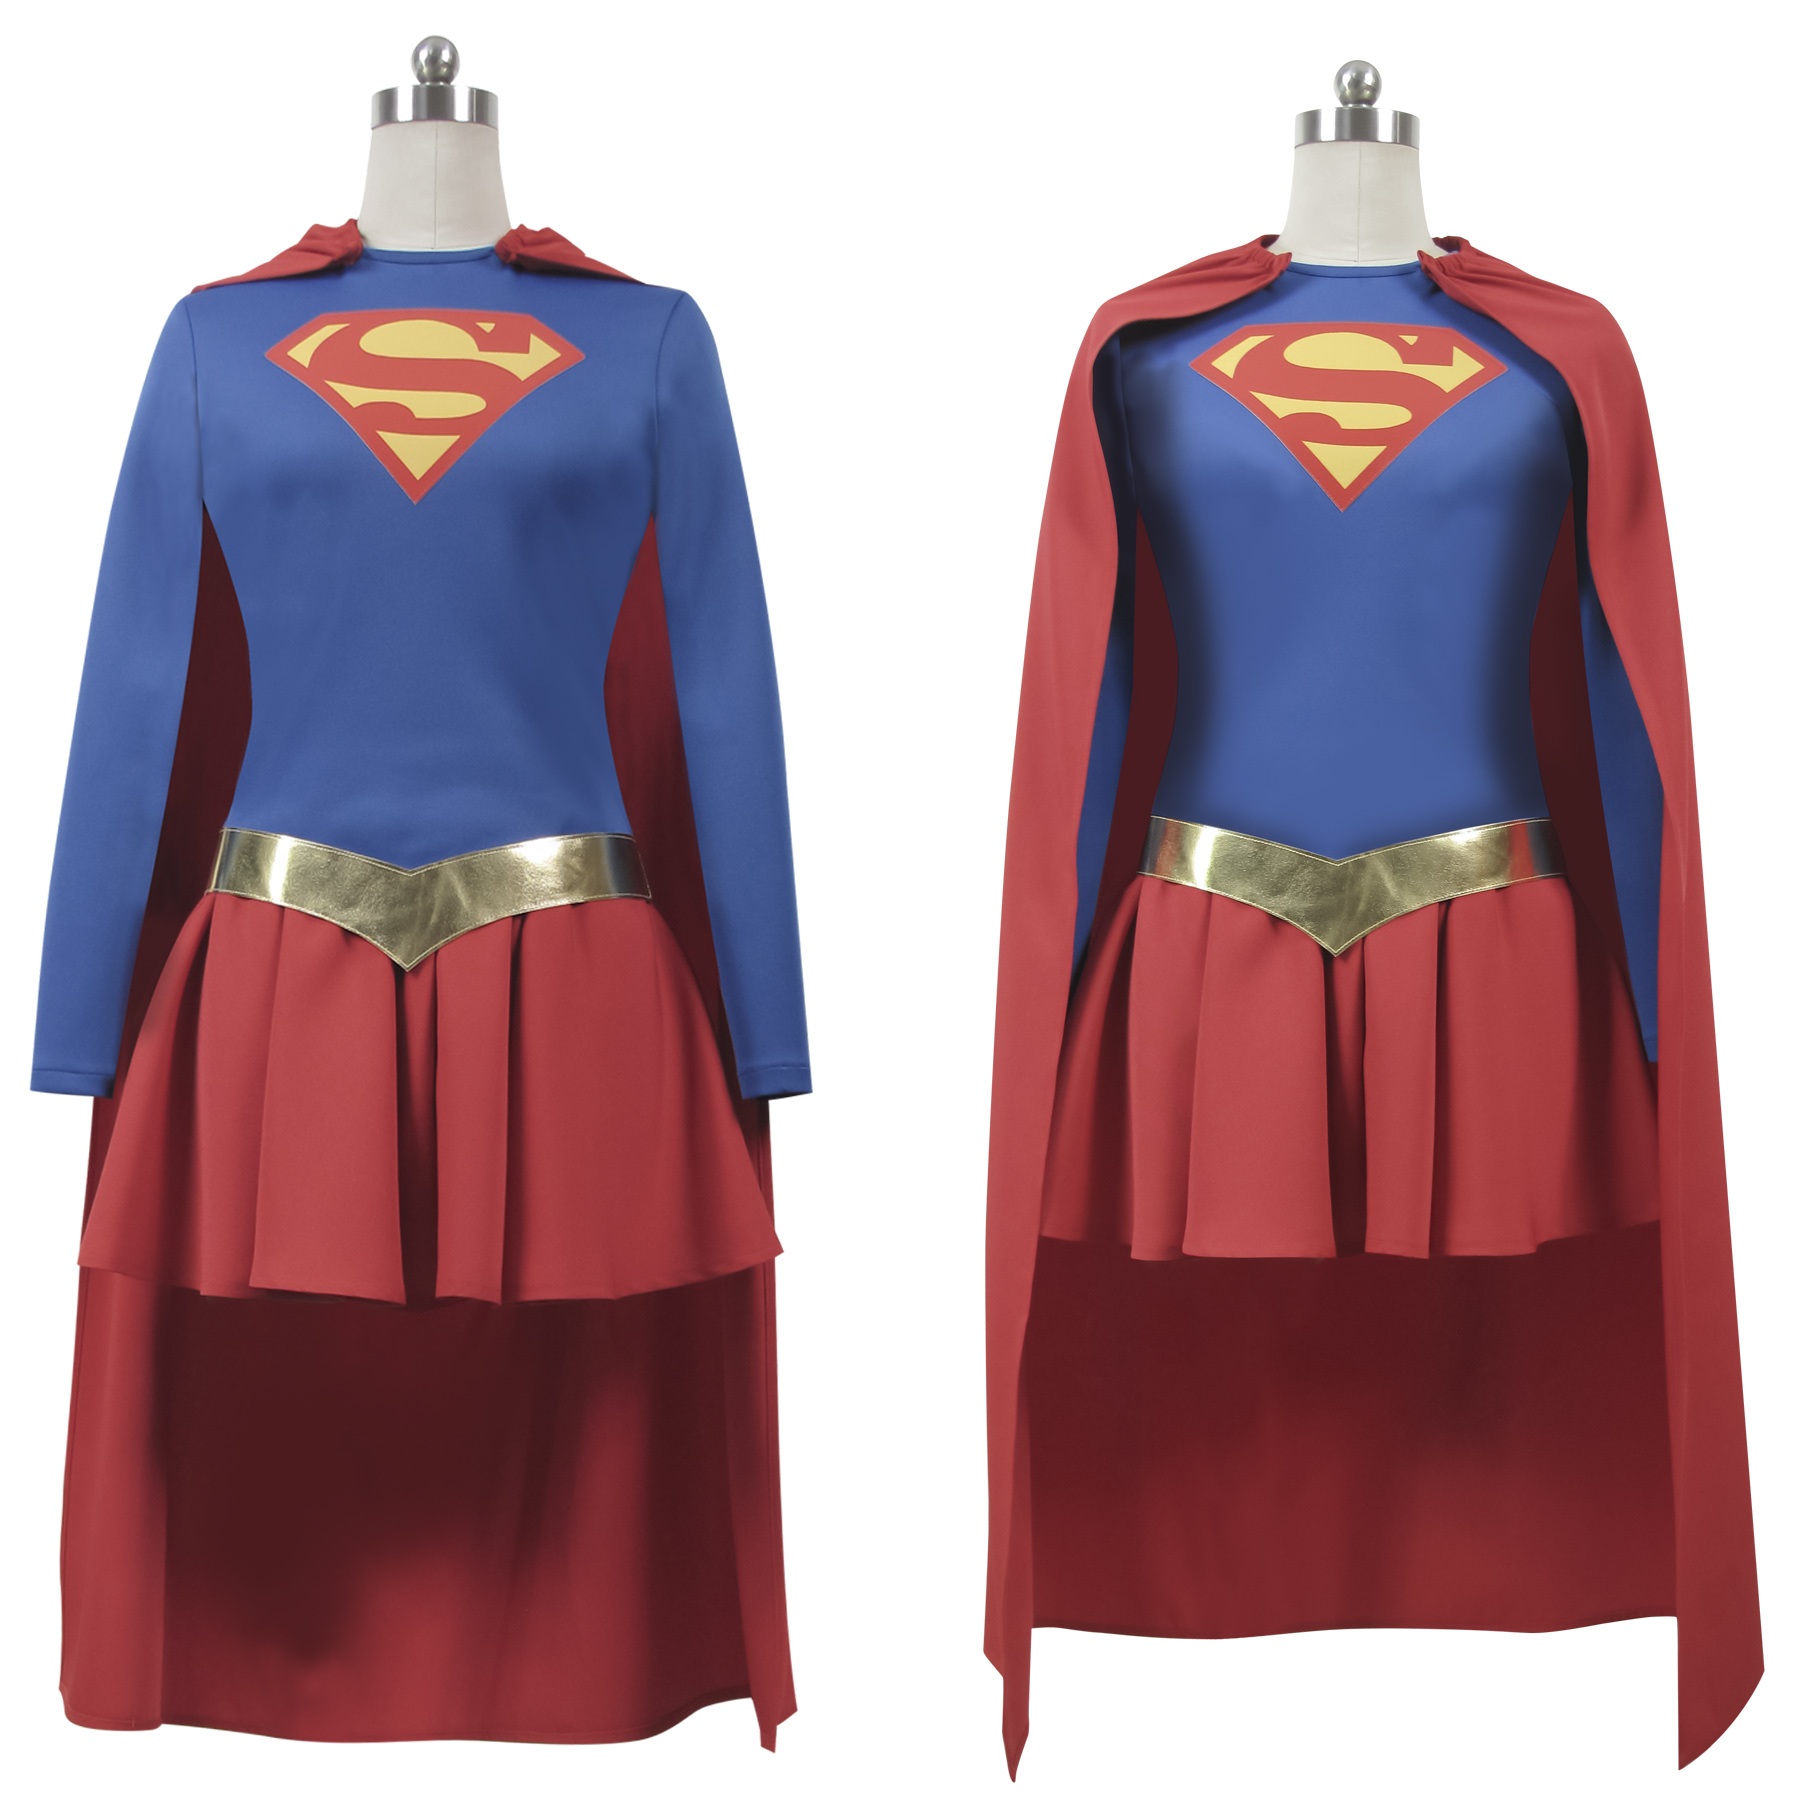 女超人cos服 Supergirl  超级少女 超级女孩 超女 cosplay服装